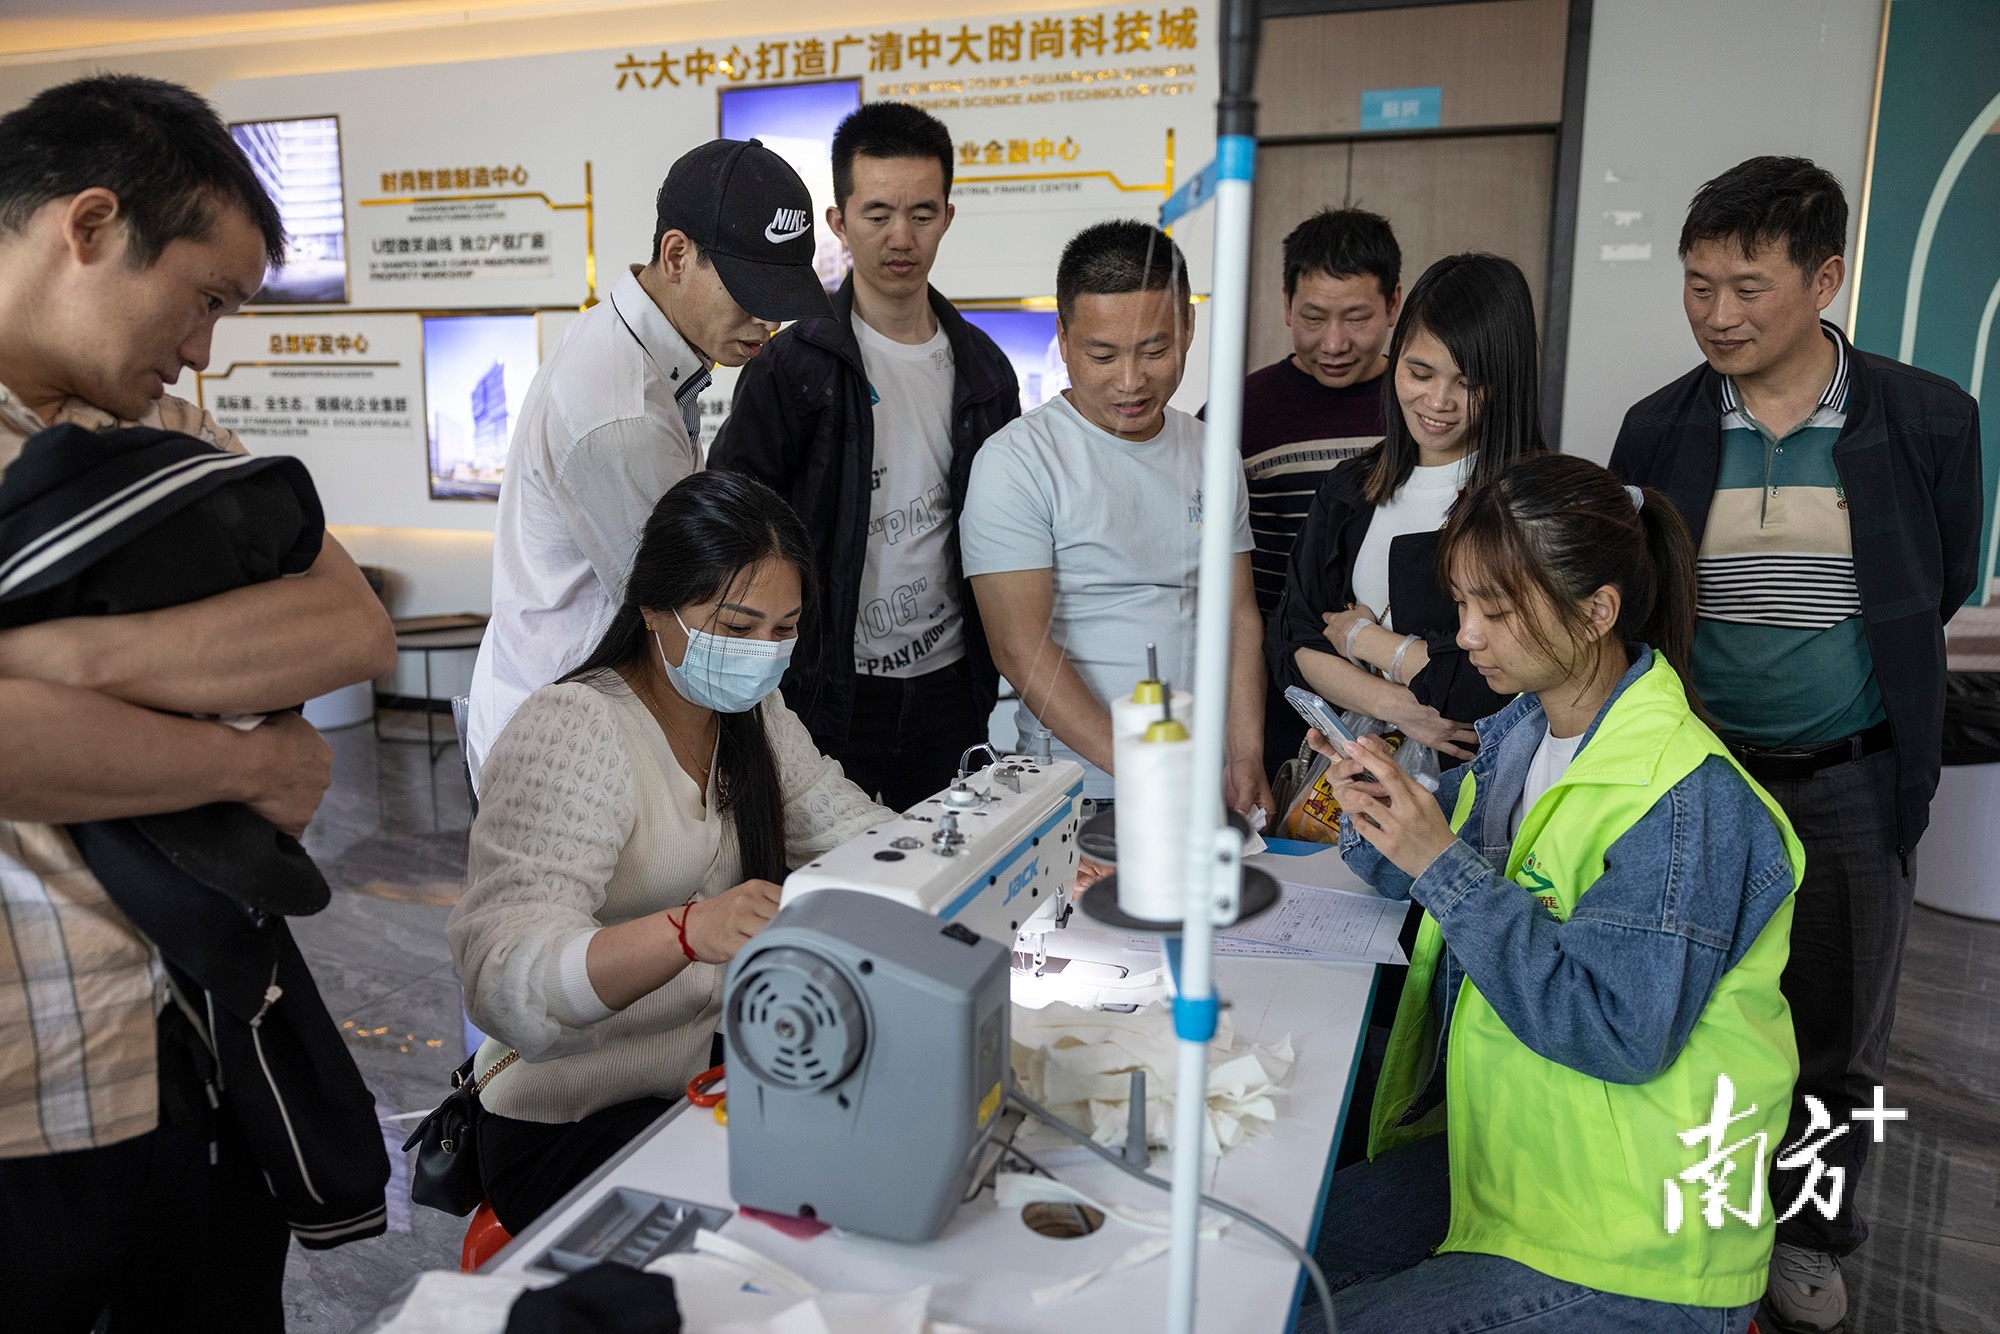 制衣工人进行平车技能测试，“广州北·中大时尚科技城”的工作人员在一旁计时。